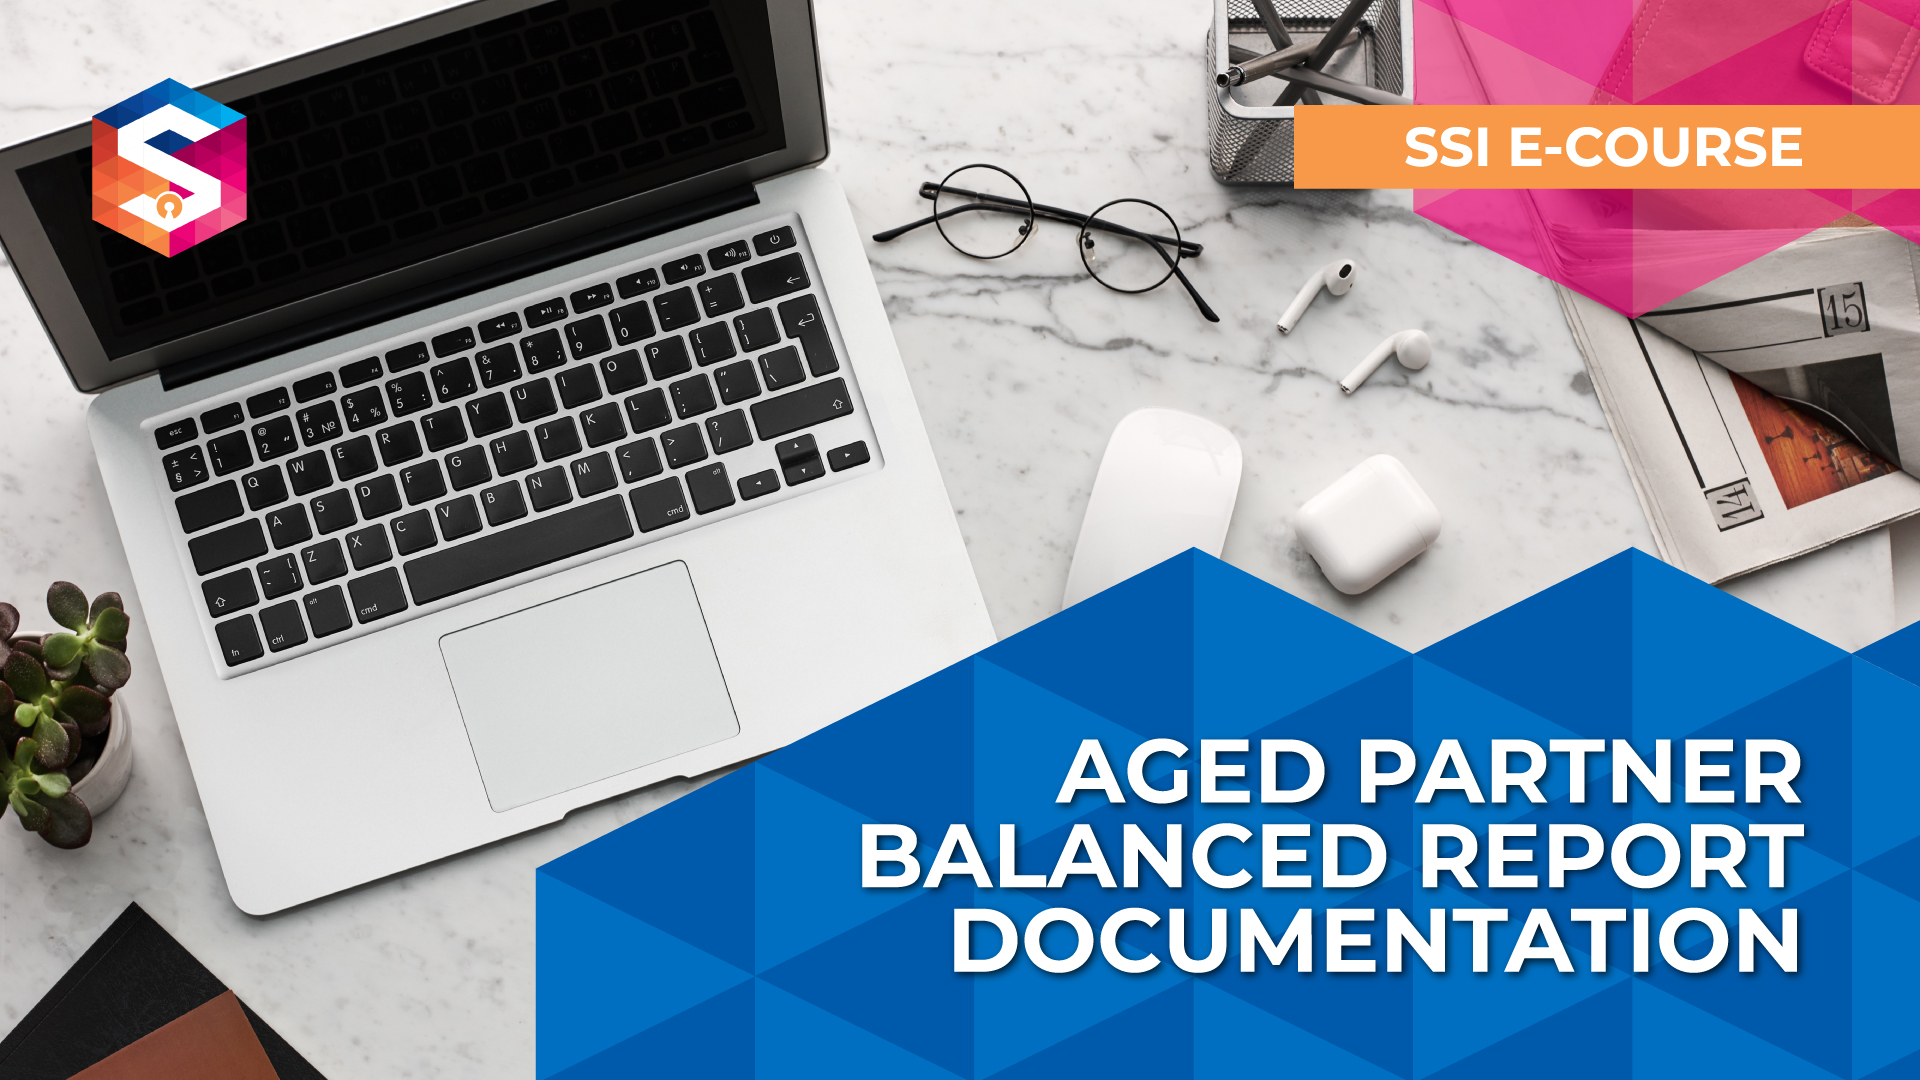 Aged Partner Balance Documentation